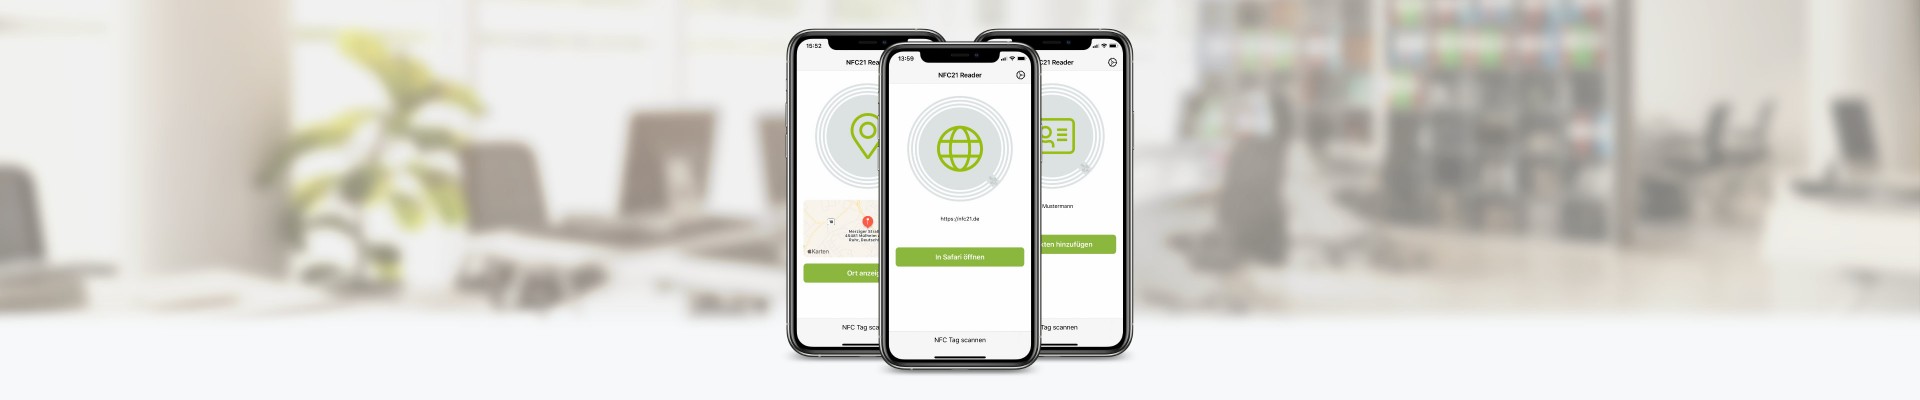 NFC21 Reader für iOS - NFC-Tags mit dem iPhone auslesen